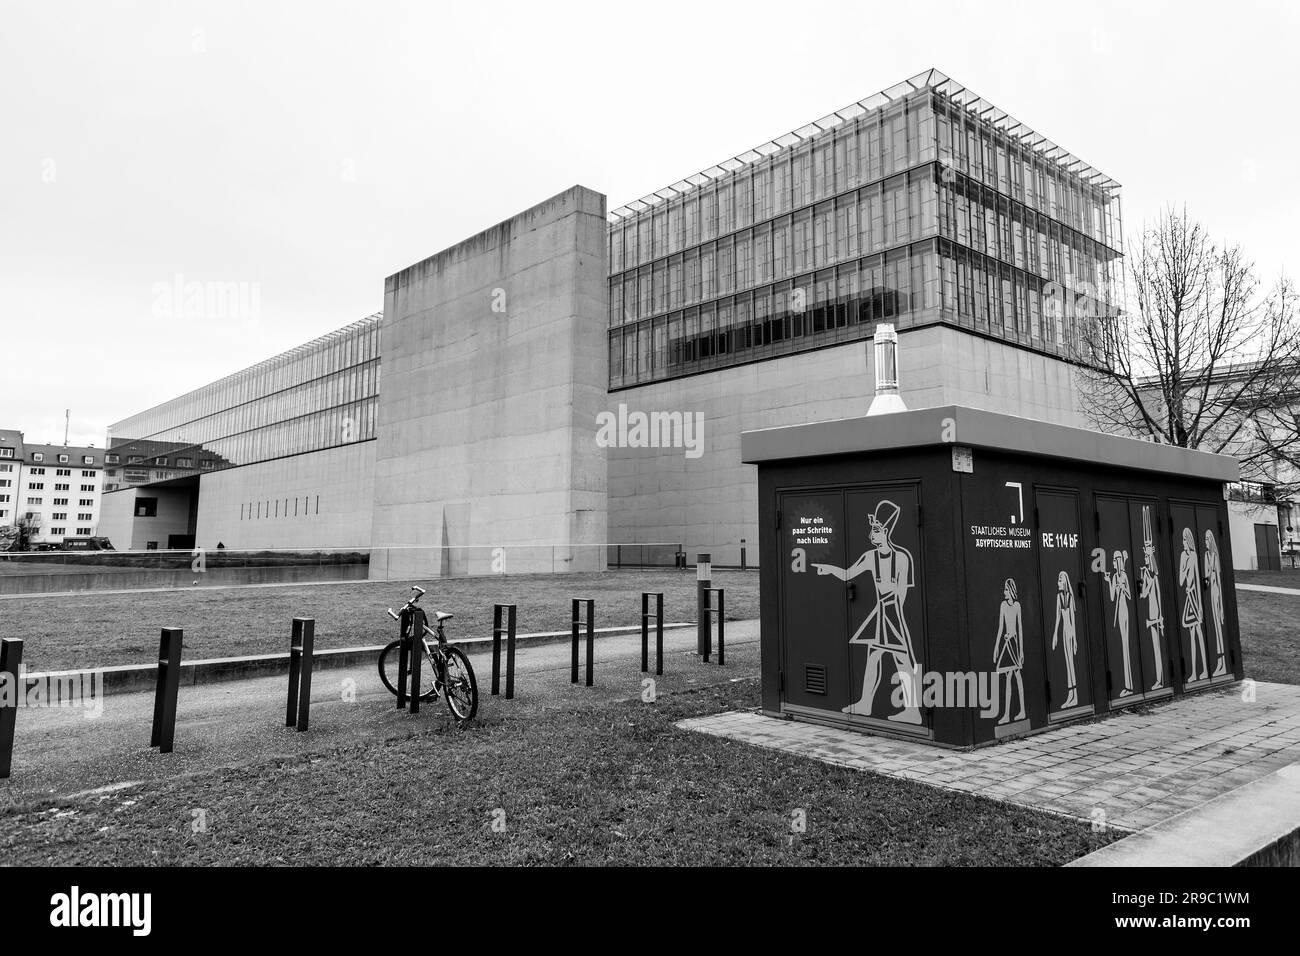 München, Deutschland - 23. DEZ. 2021: Fassade der neuen Pinakothek, des Münchner Museums für moderne Kunst, Bayern. Stockfoto